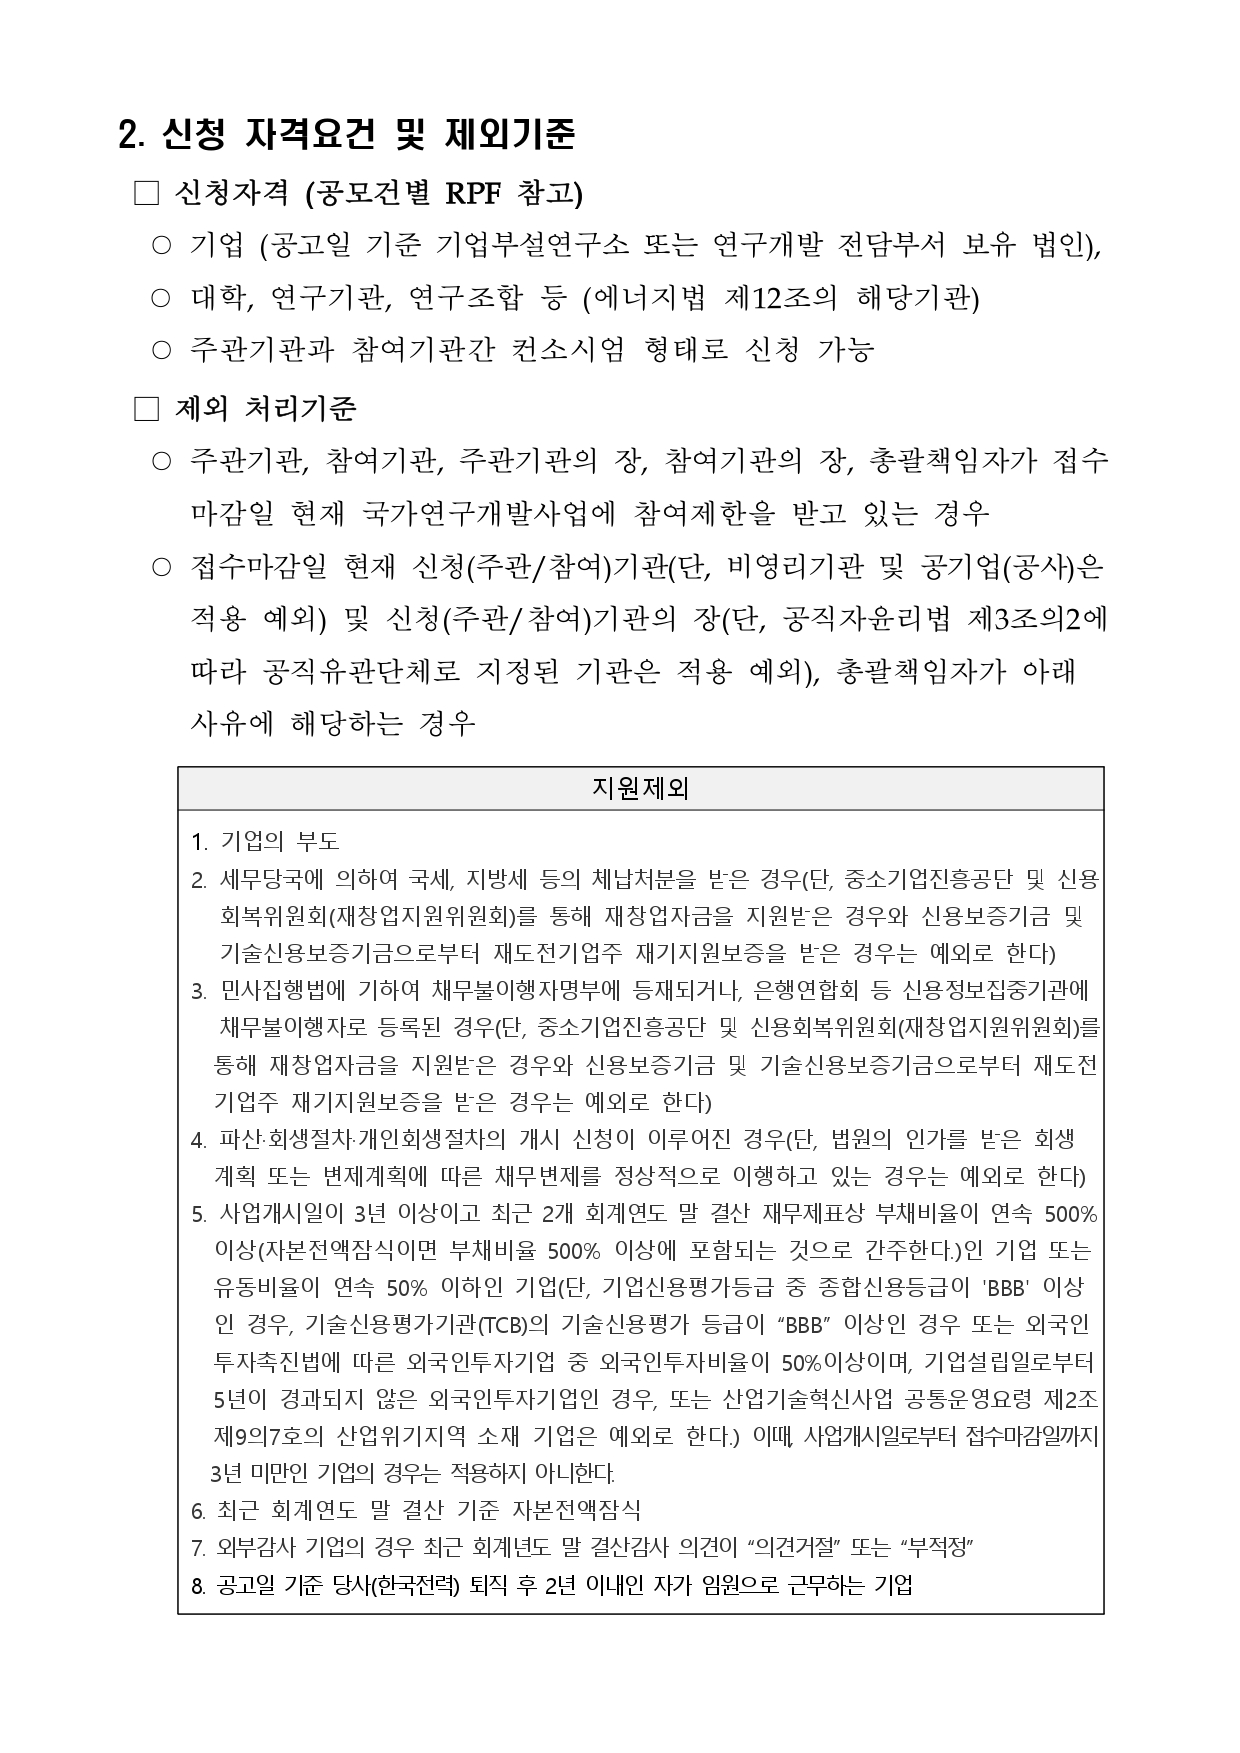 첨부1. 사외공모 위탁연구개발과제 수행기관 공모문(연장)_page-0002.jpg